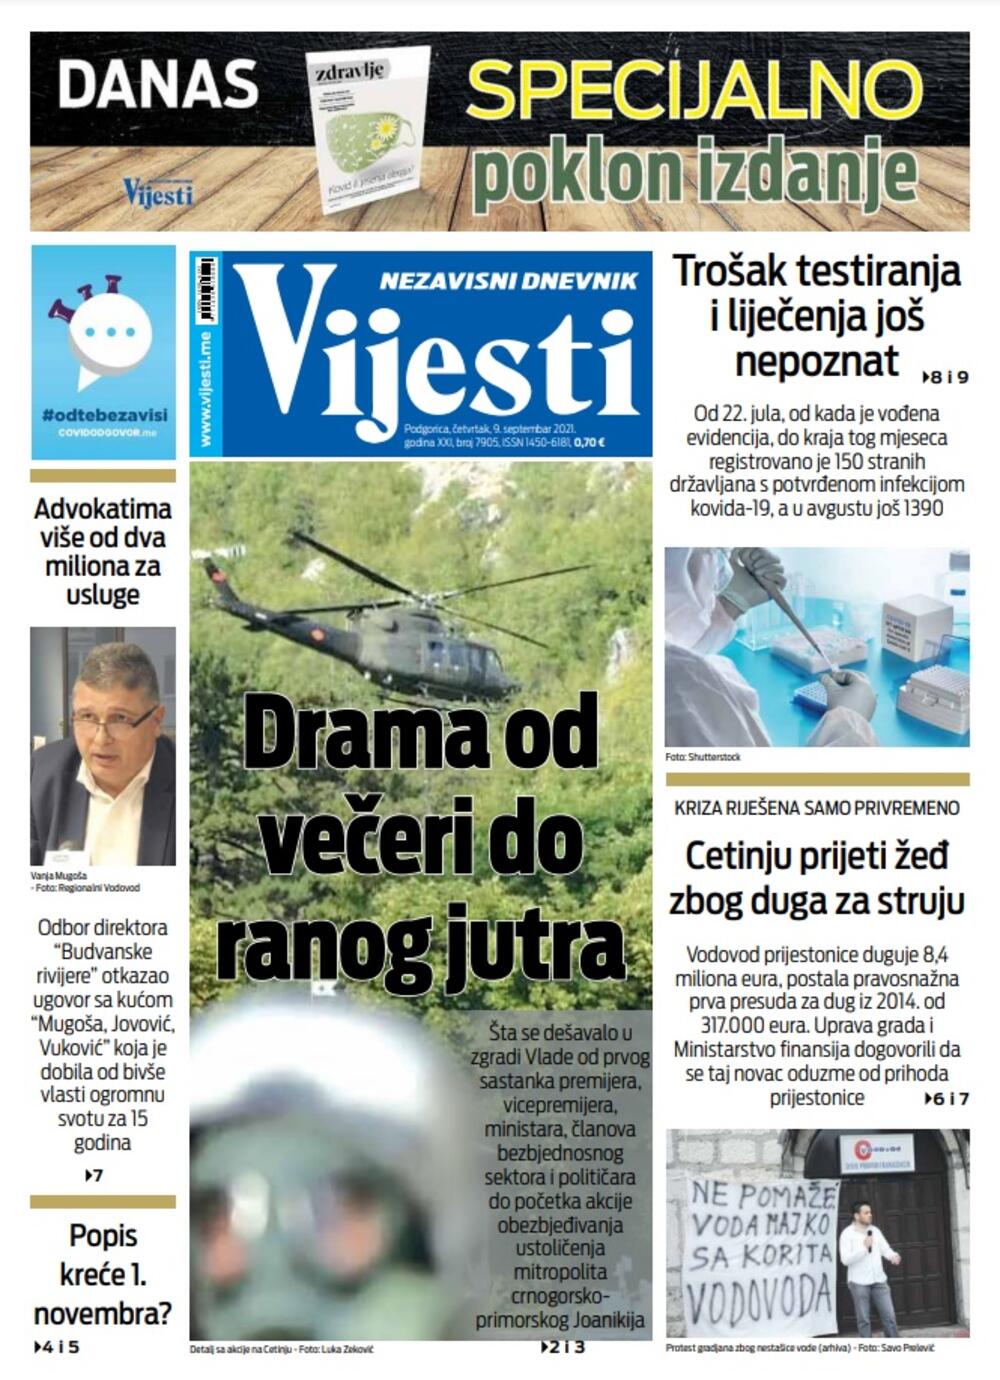 Naslovna strana "Vijesti" za 9. septembar 2021. godine, Foto: Vijesti